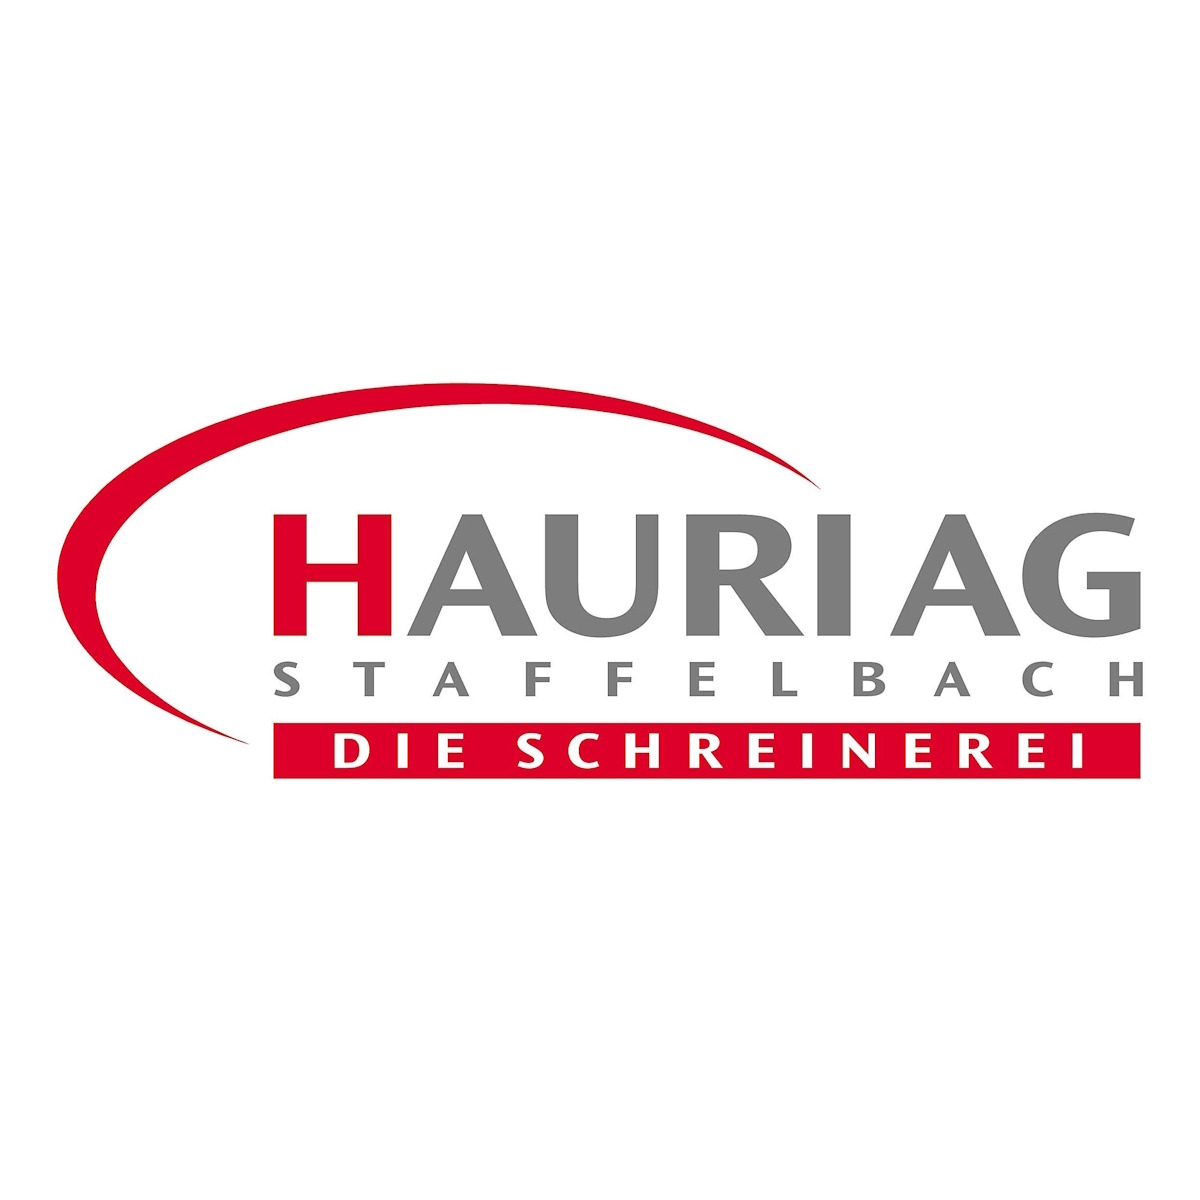 Hauri AG Staffelbach - Die Schreinerei Logo